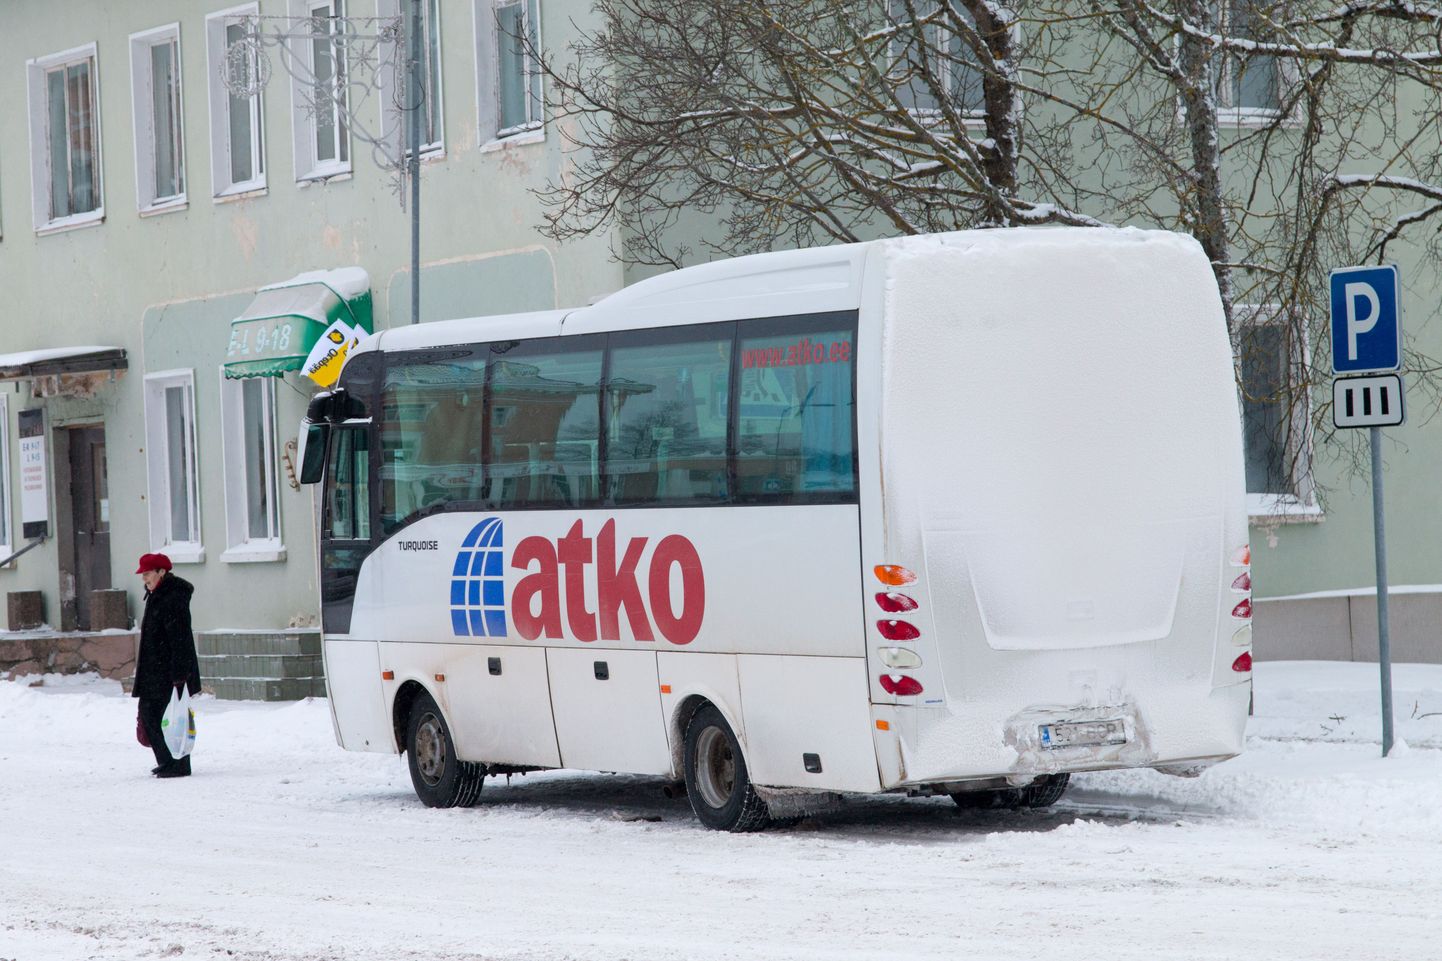 Atko buss Otepääl. Pilt on tehtud eelmisel aastal.